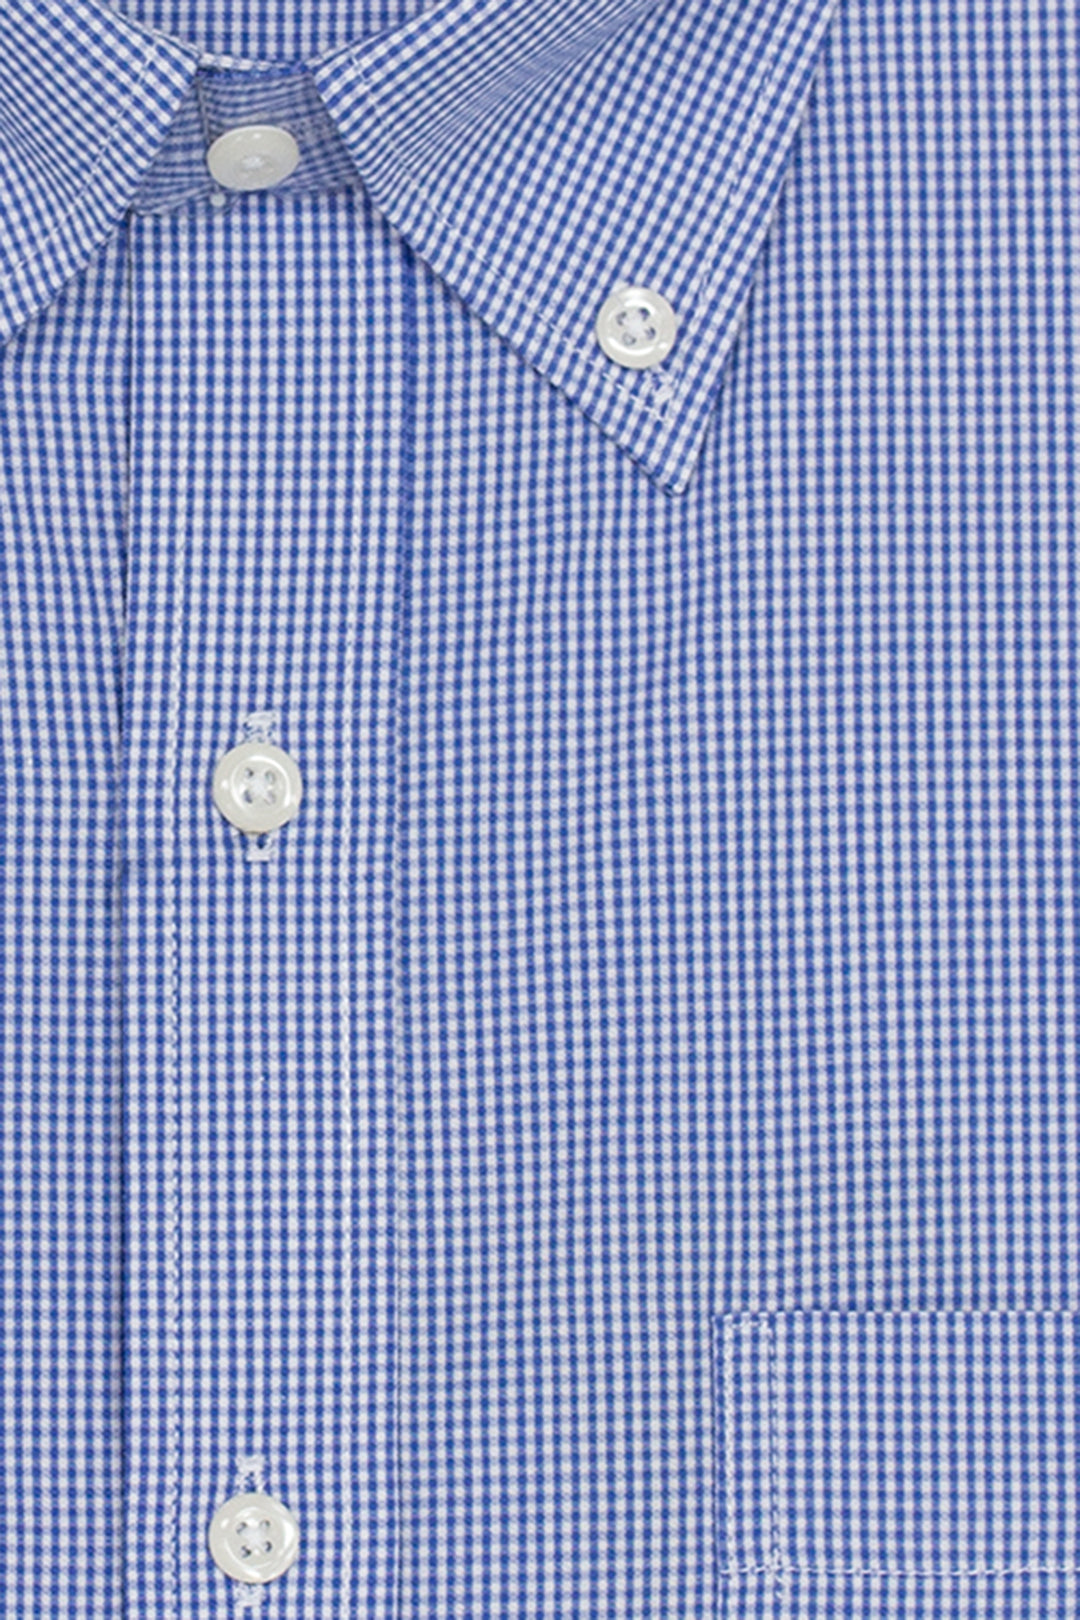 Camicia classica a quadri in puro cotone con button down